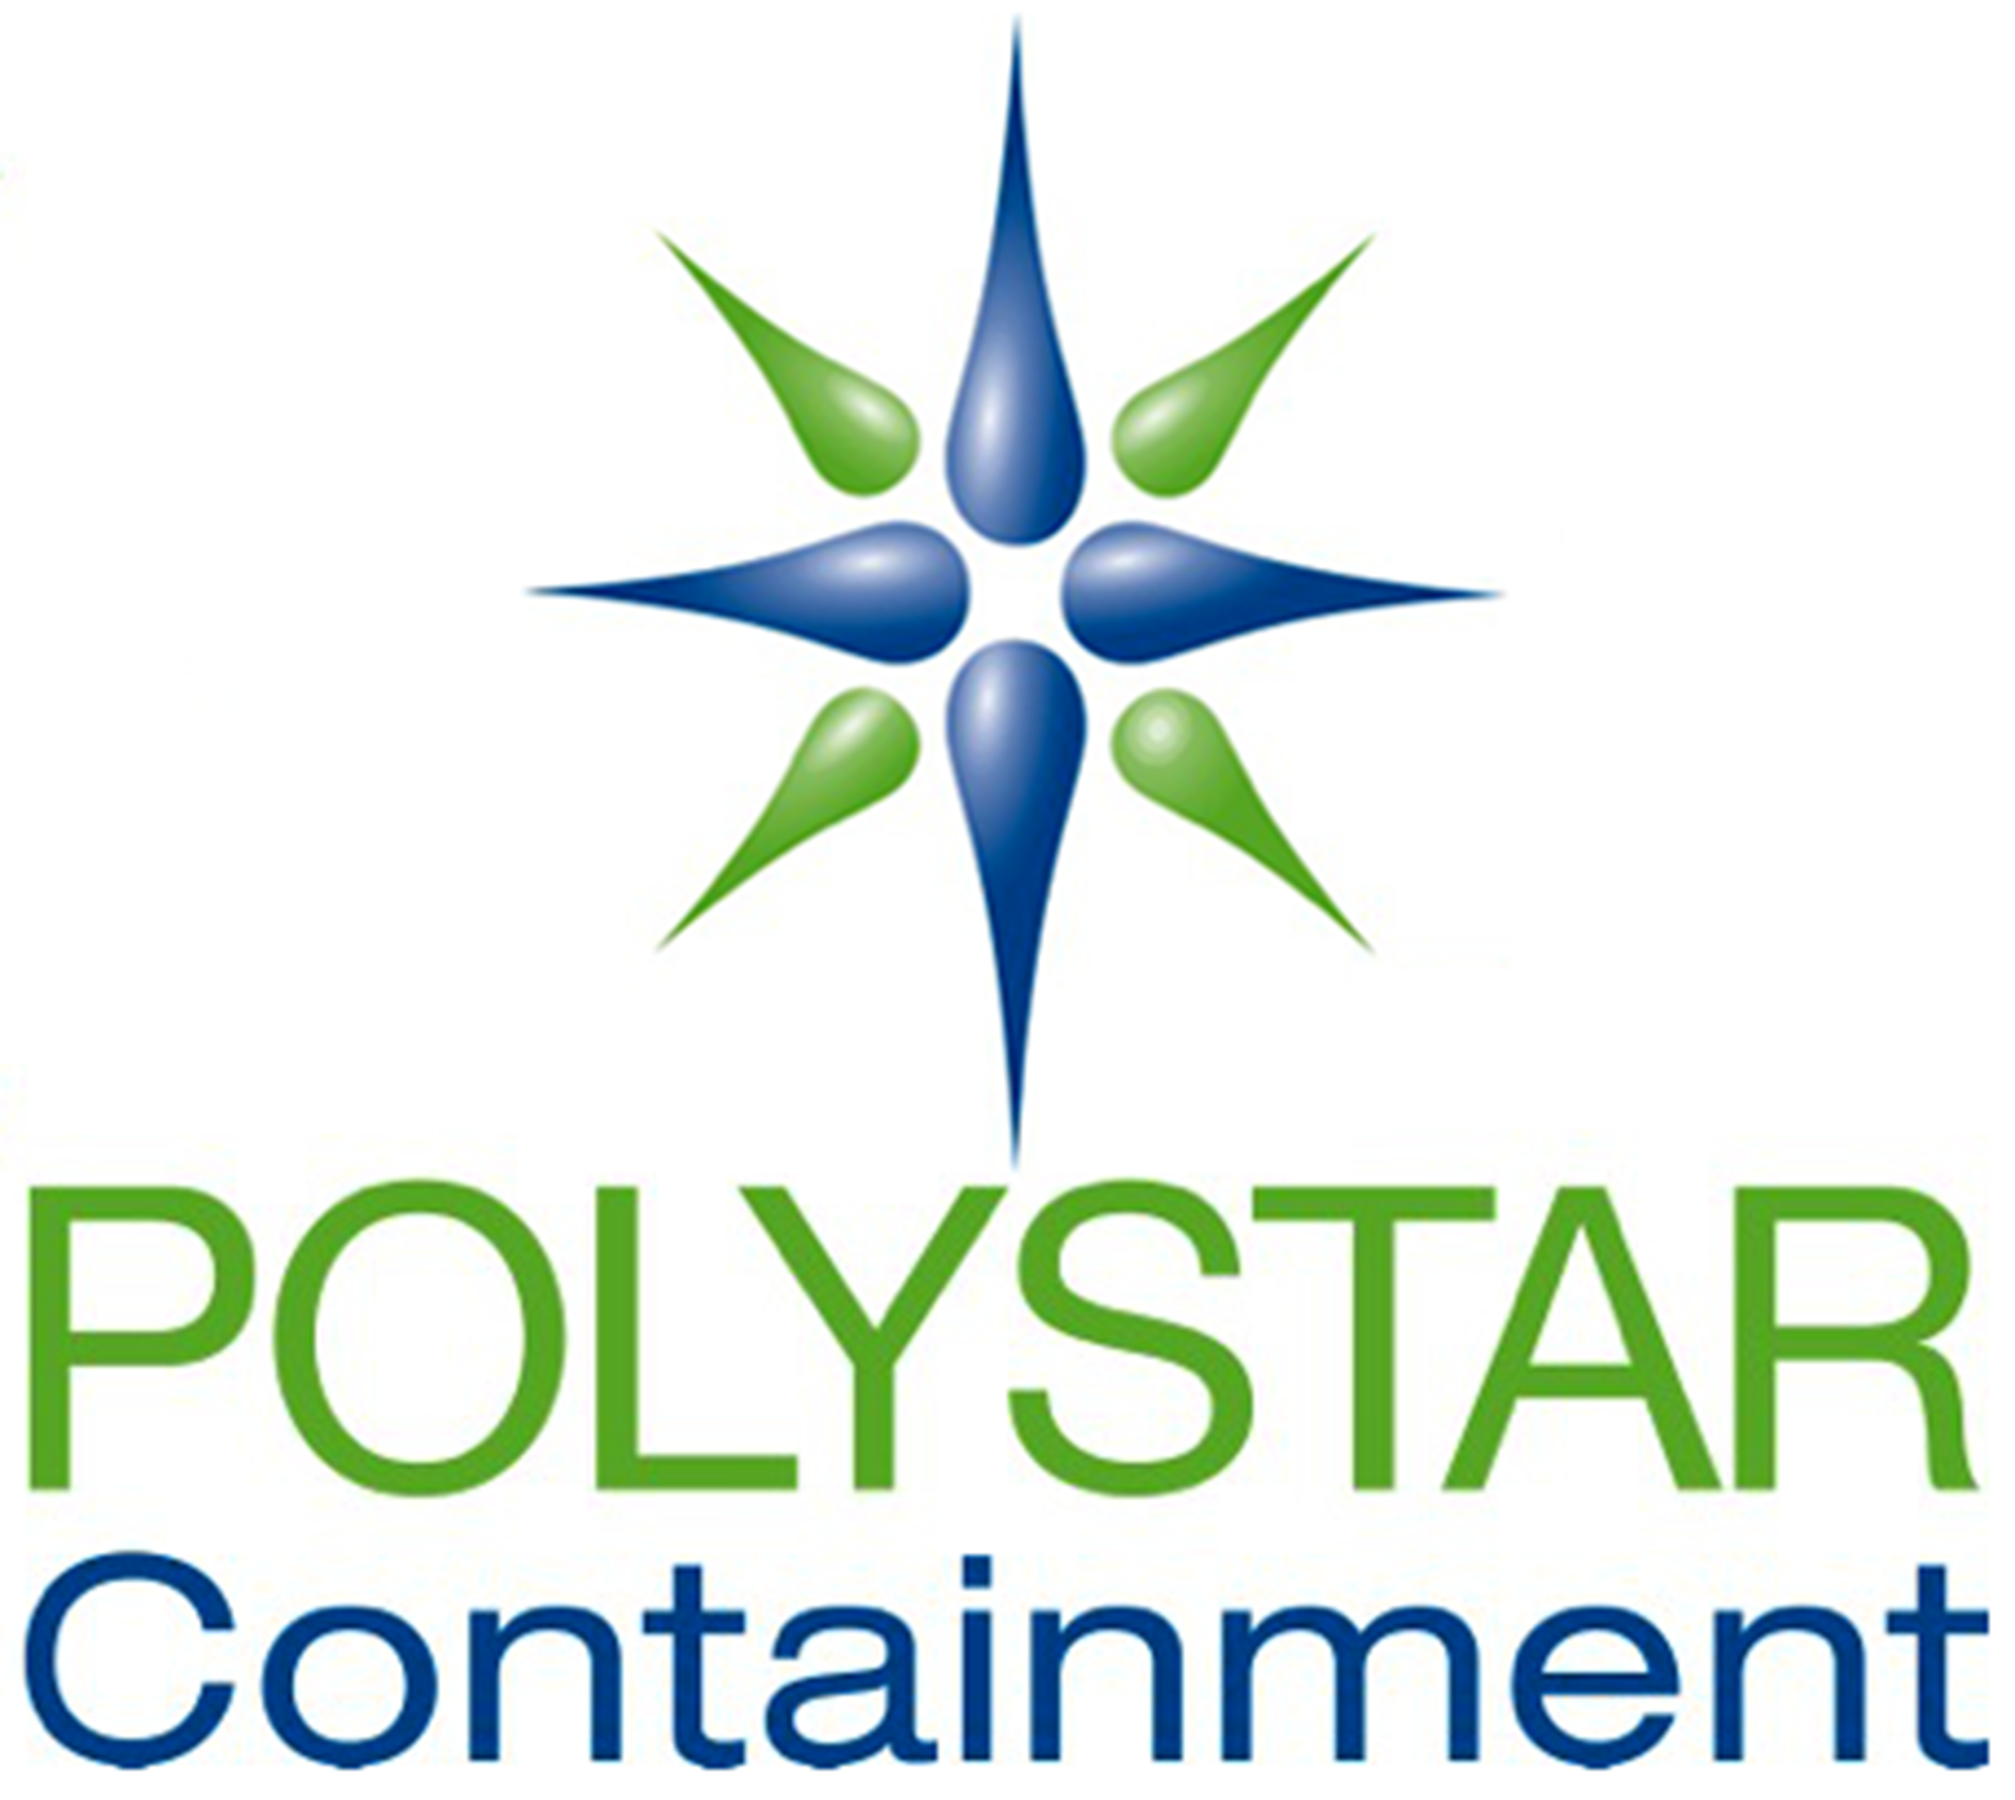 polystar containment logo